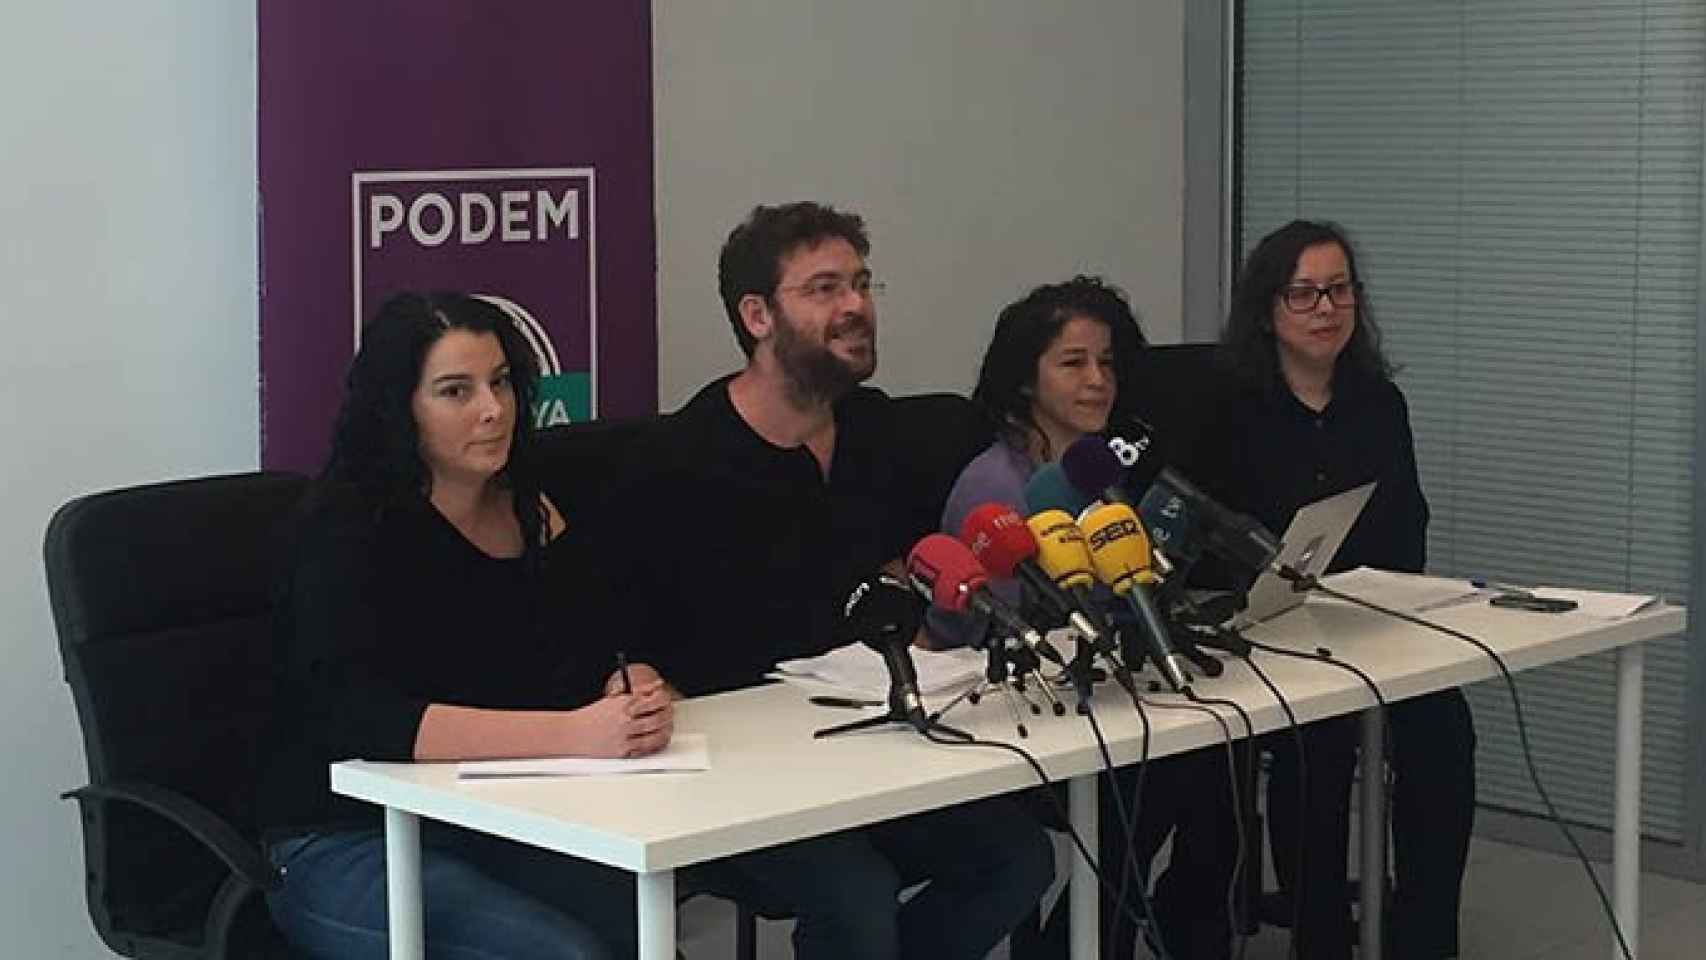 El secertario general de Podem, Albano Dante Fachin, explica la retirada de su candidatura a la confluencia de las izquierdas que impulsan los comunes / CG